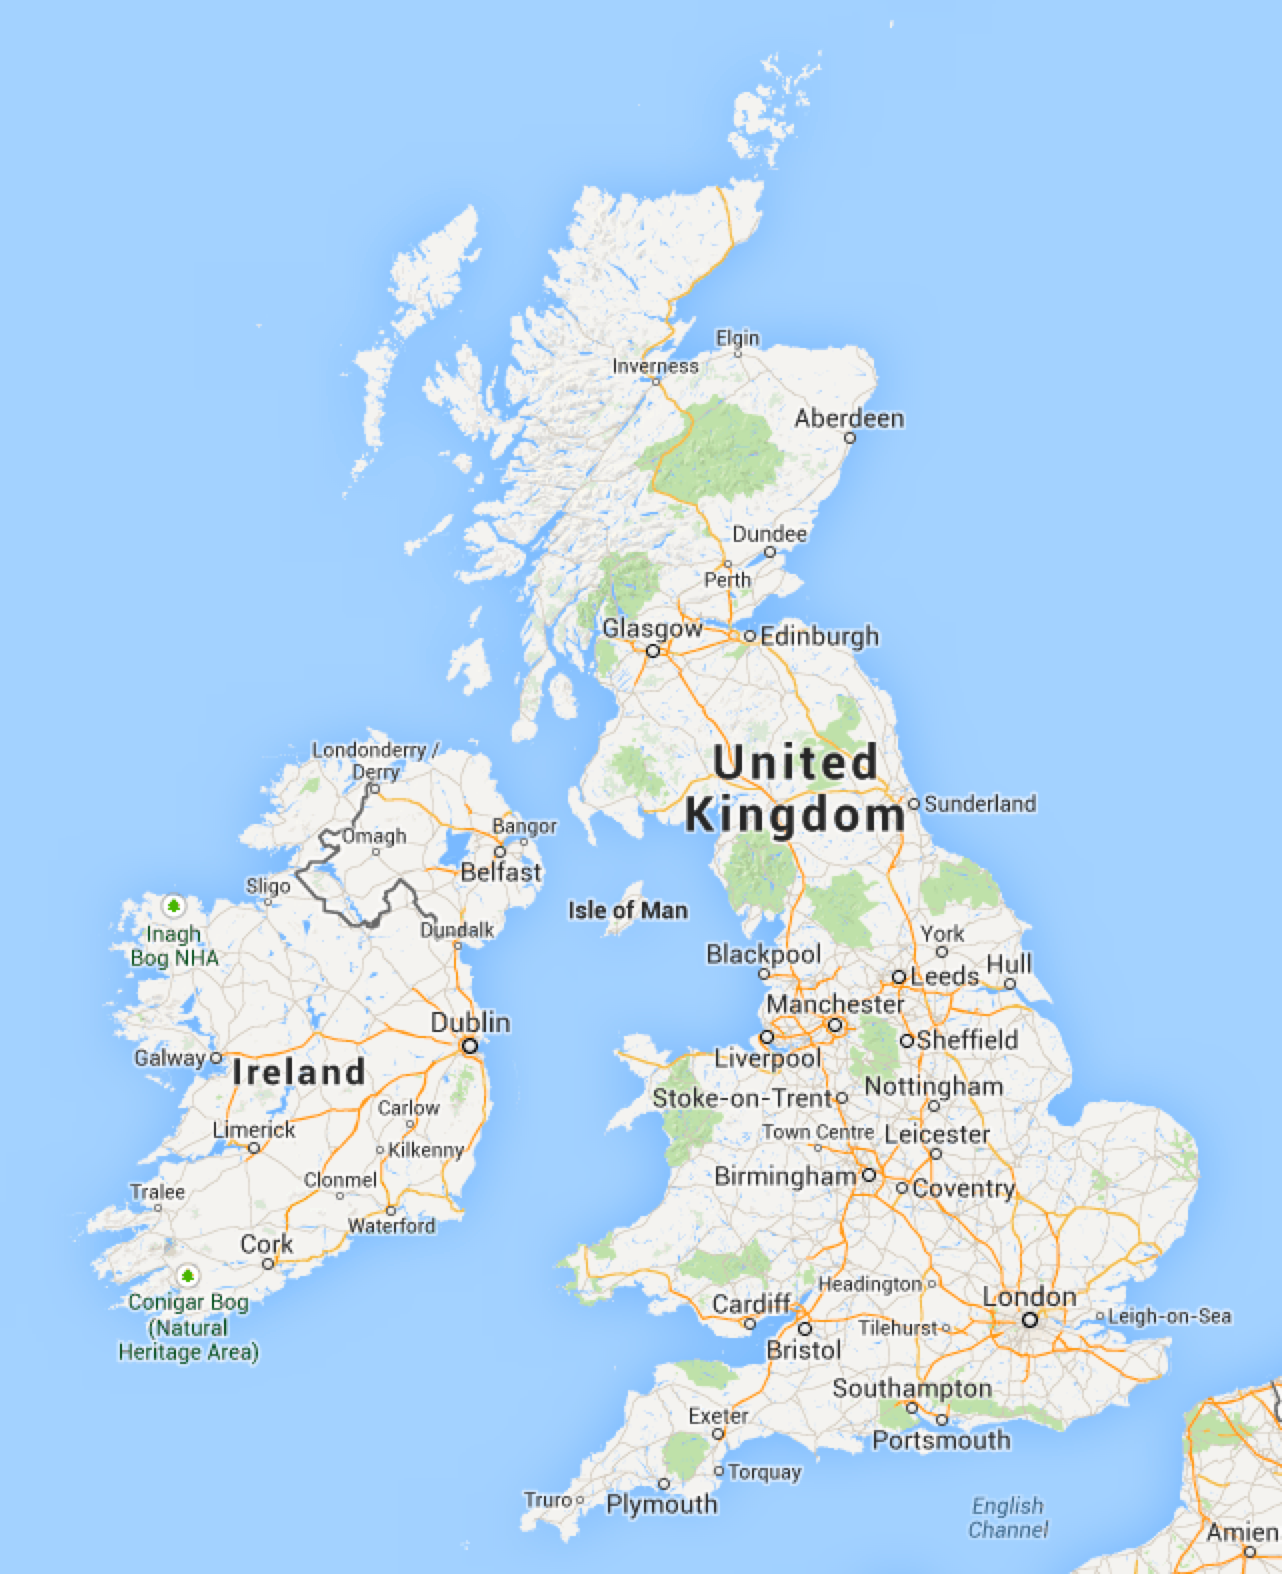 Google Maps & the UK